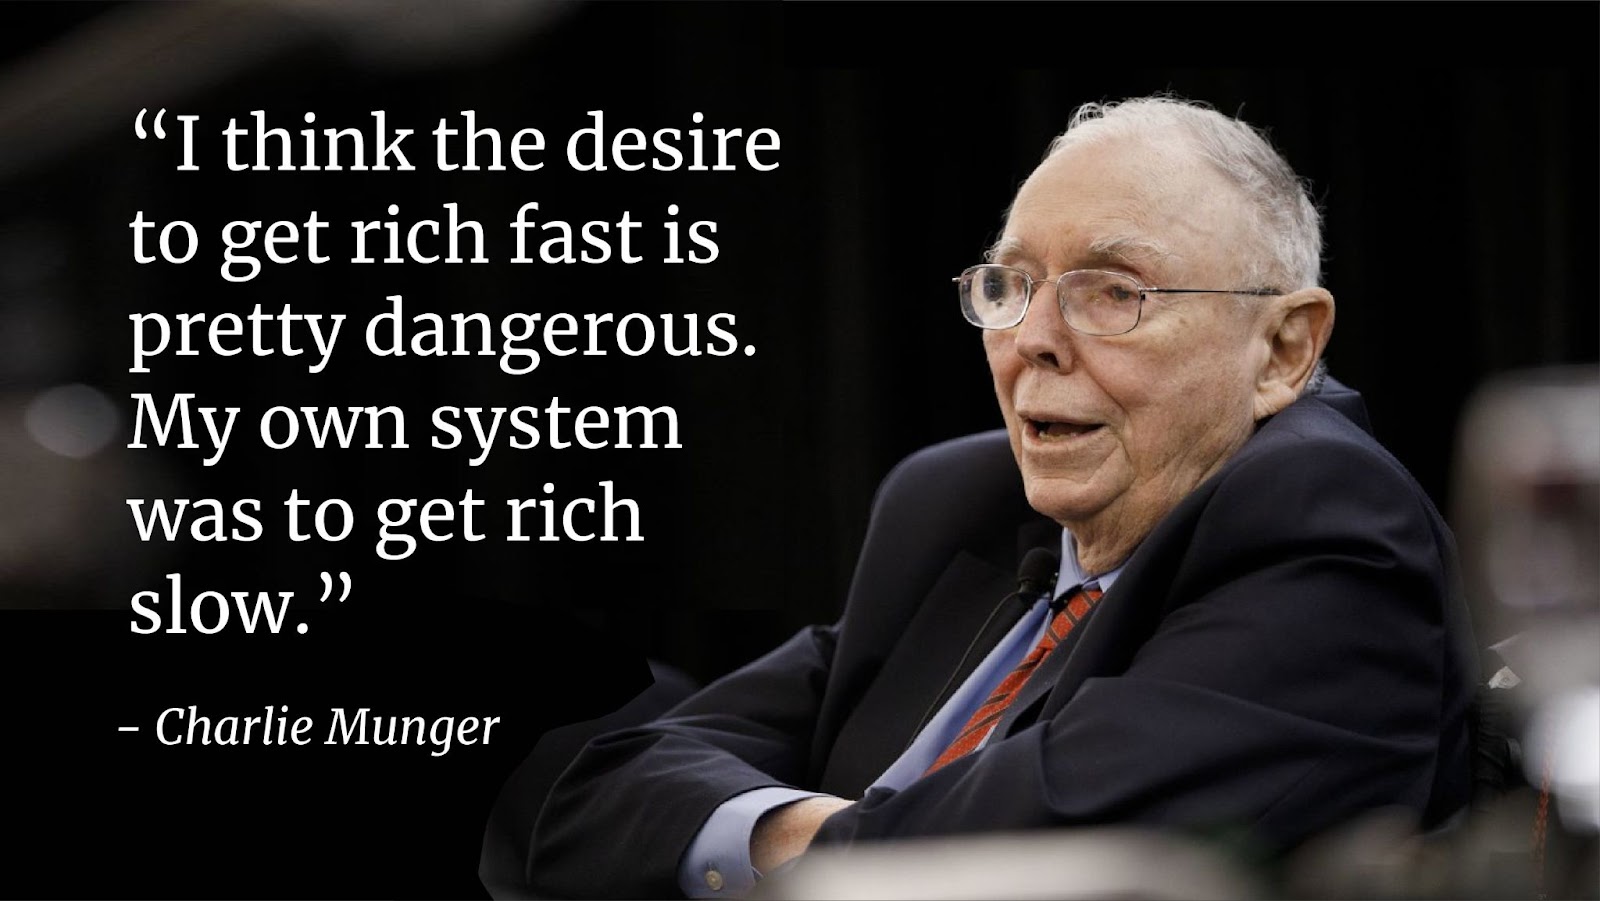 “Tôi nghĩ mong muốn giàu nhanh rất nguy hiểm. Nguyên lý của tôi là làm giàu một cách từ từ.” - Charlie Munger